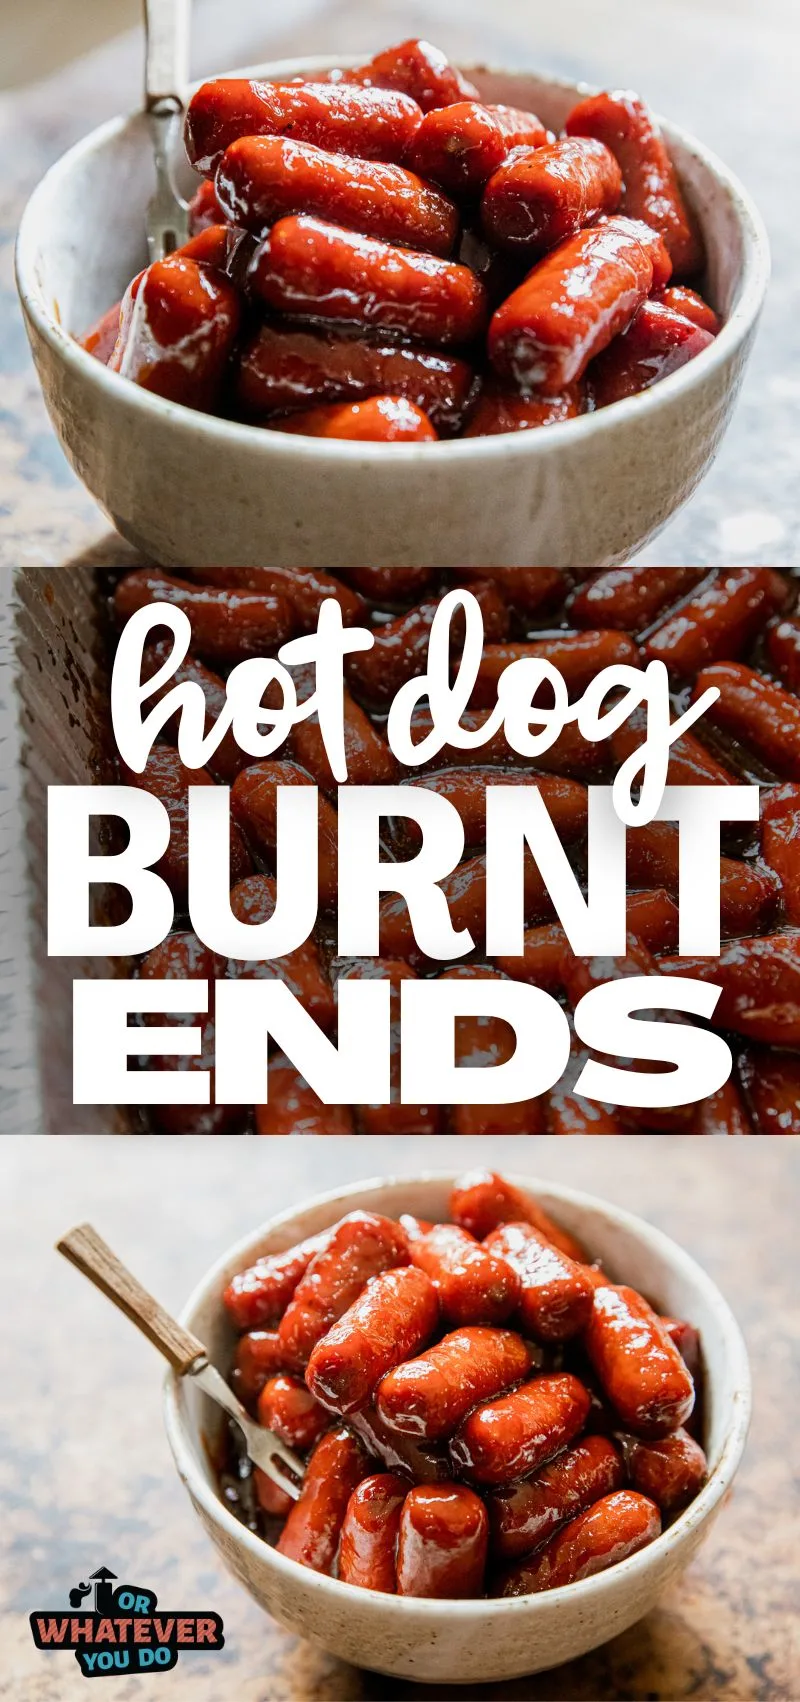 Hot Dog Burnt Ends